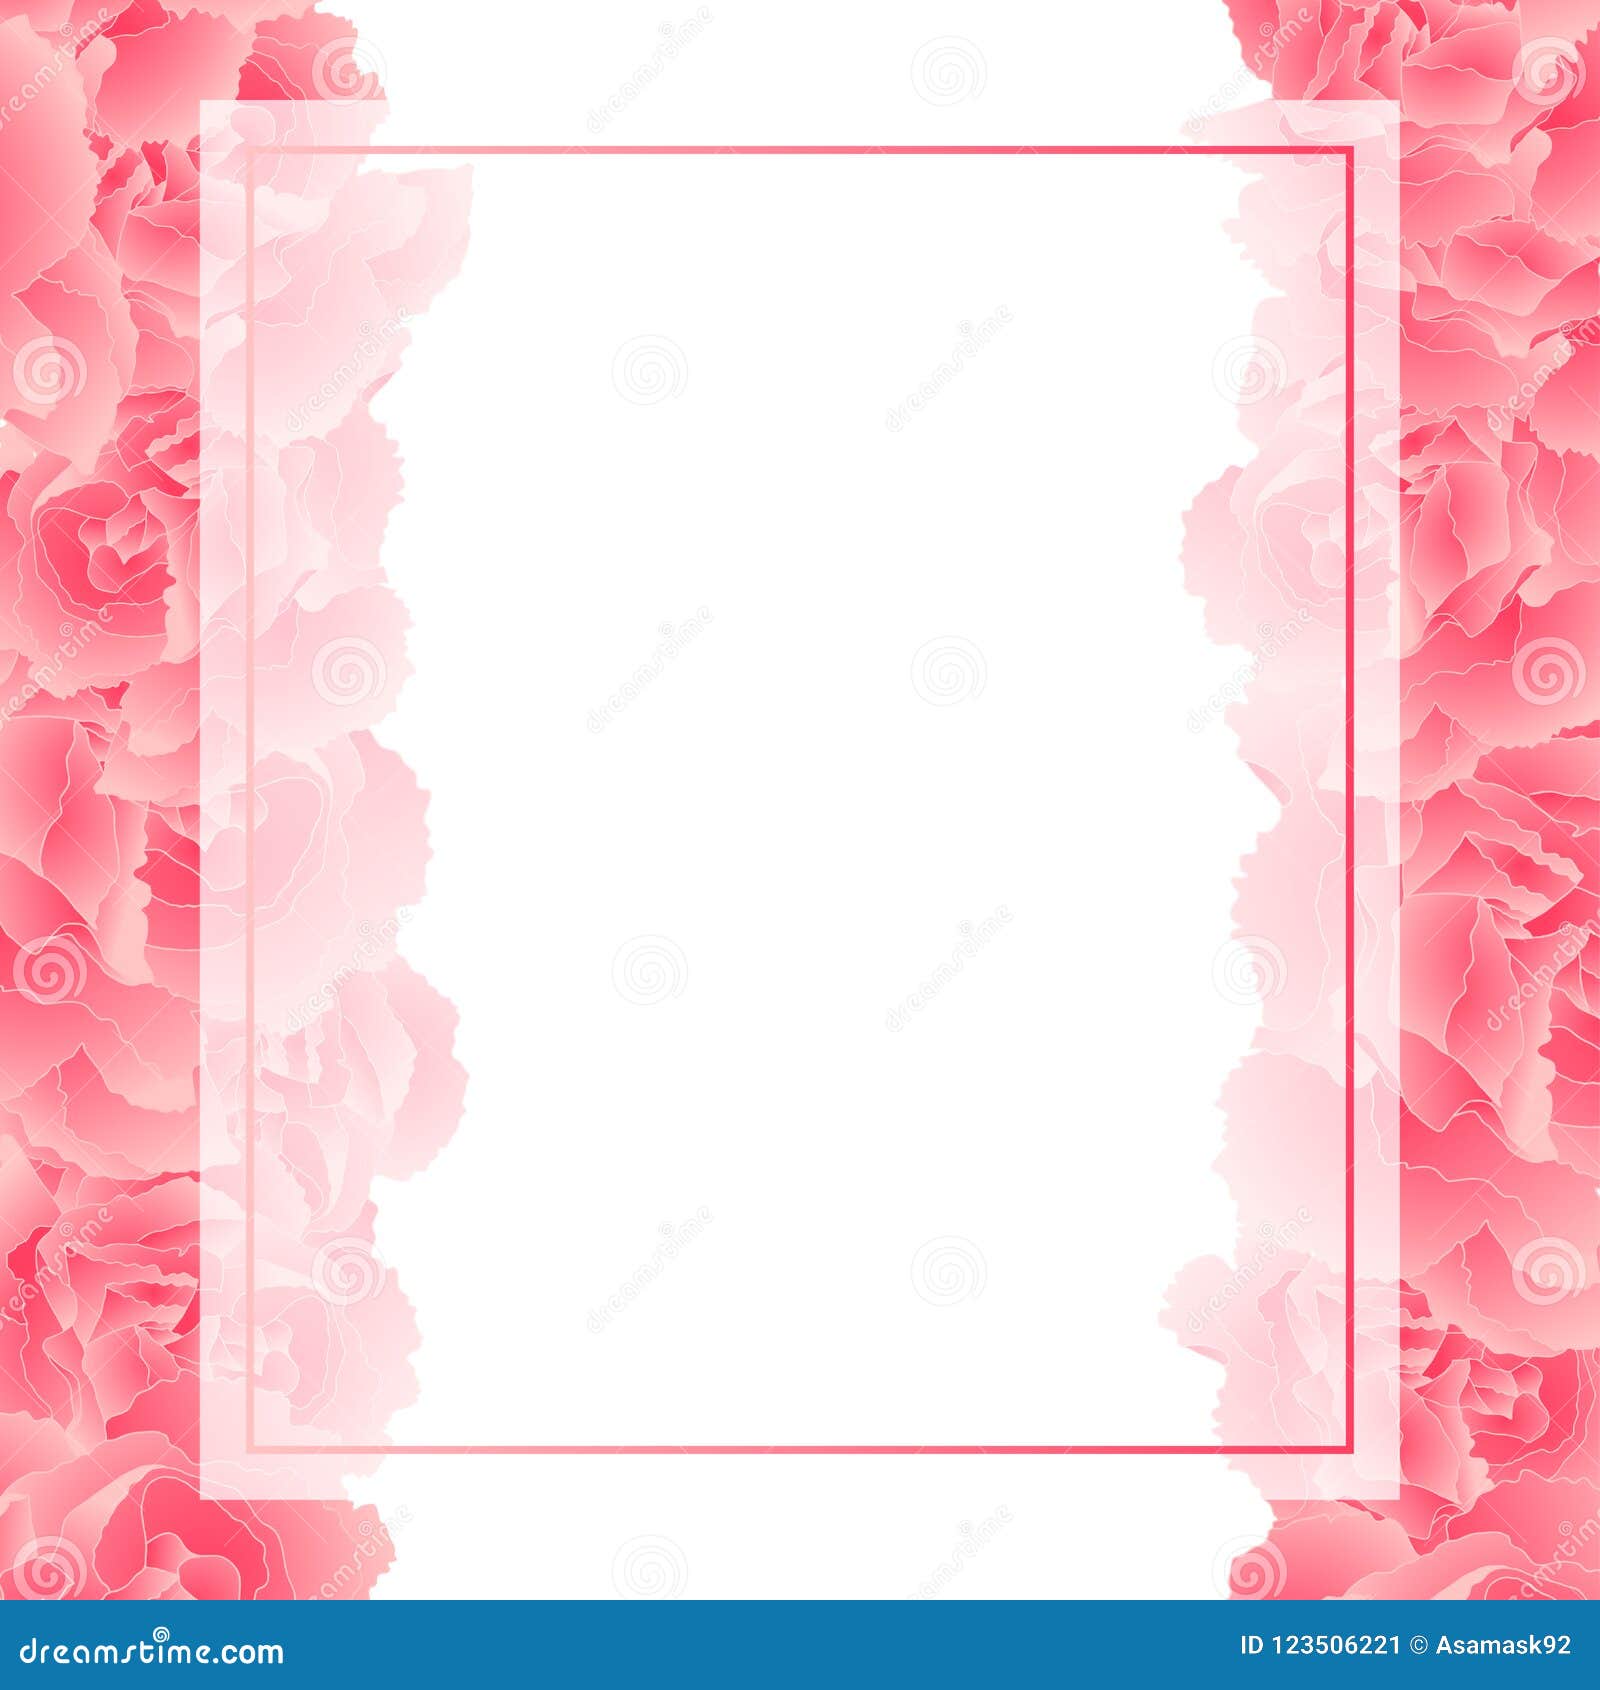 dianthus caryophyllus - pink carnation flower banner card border.  